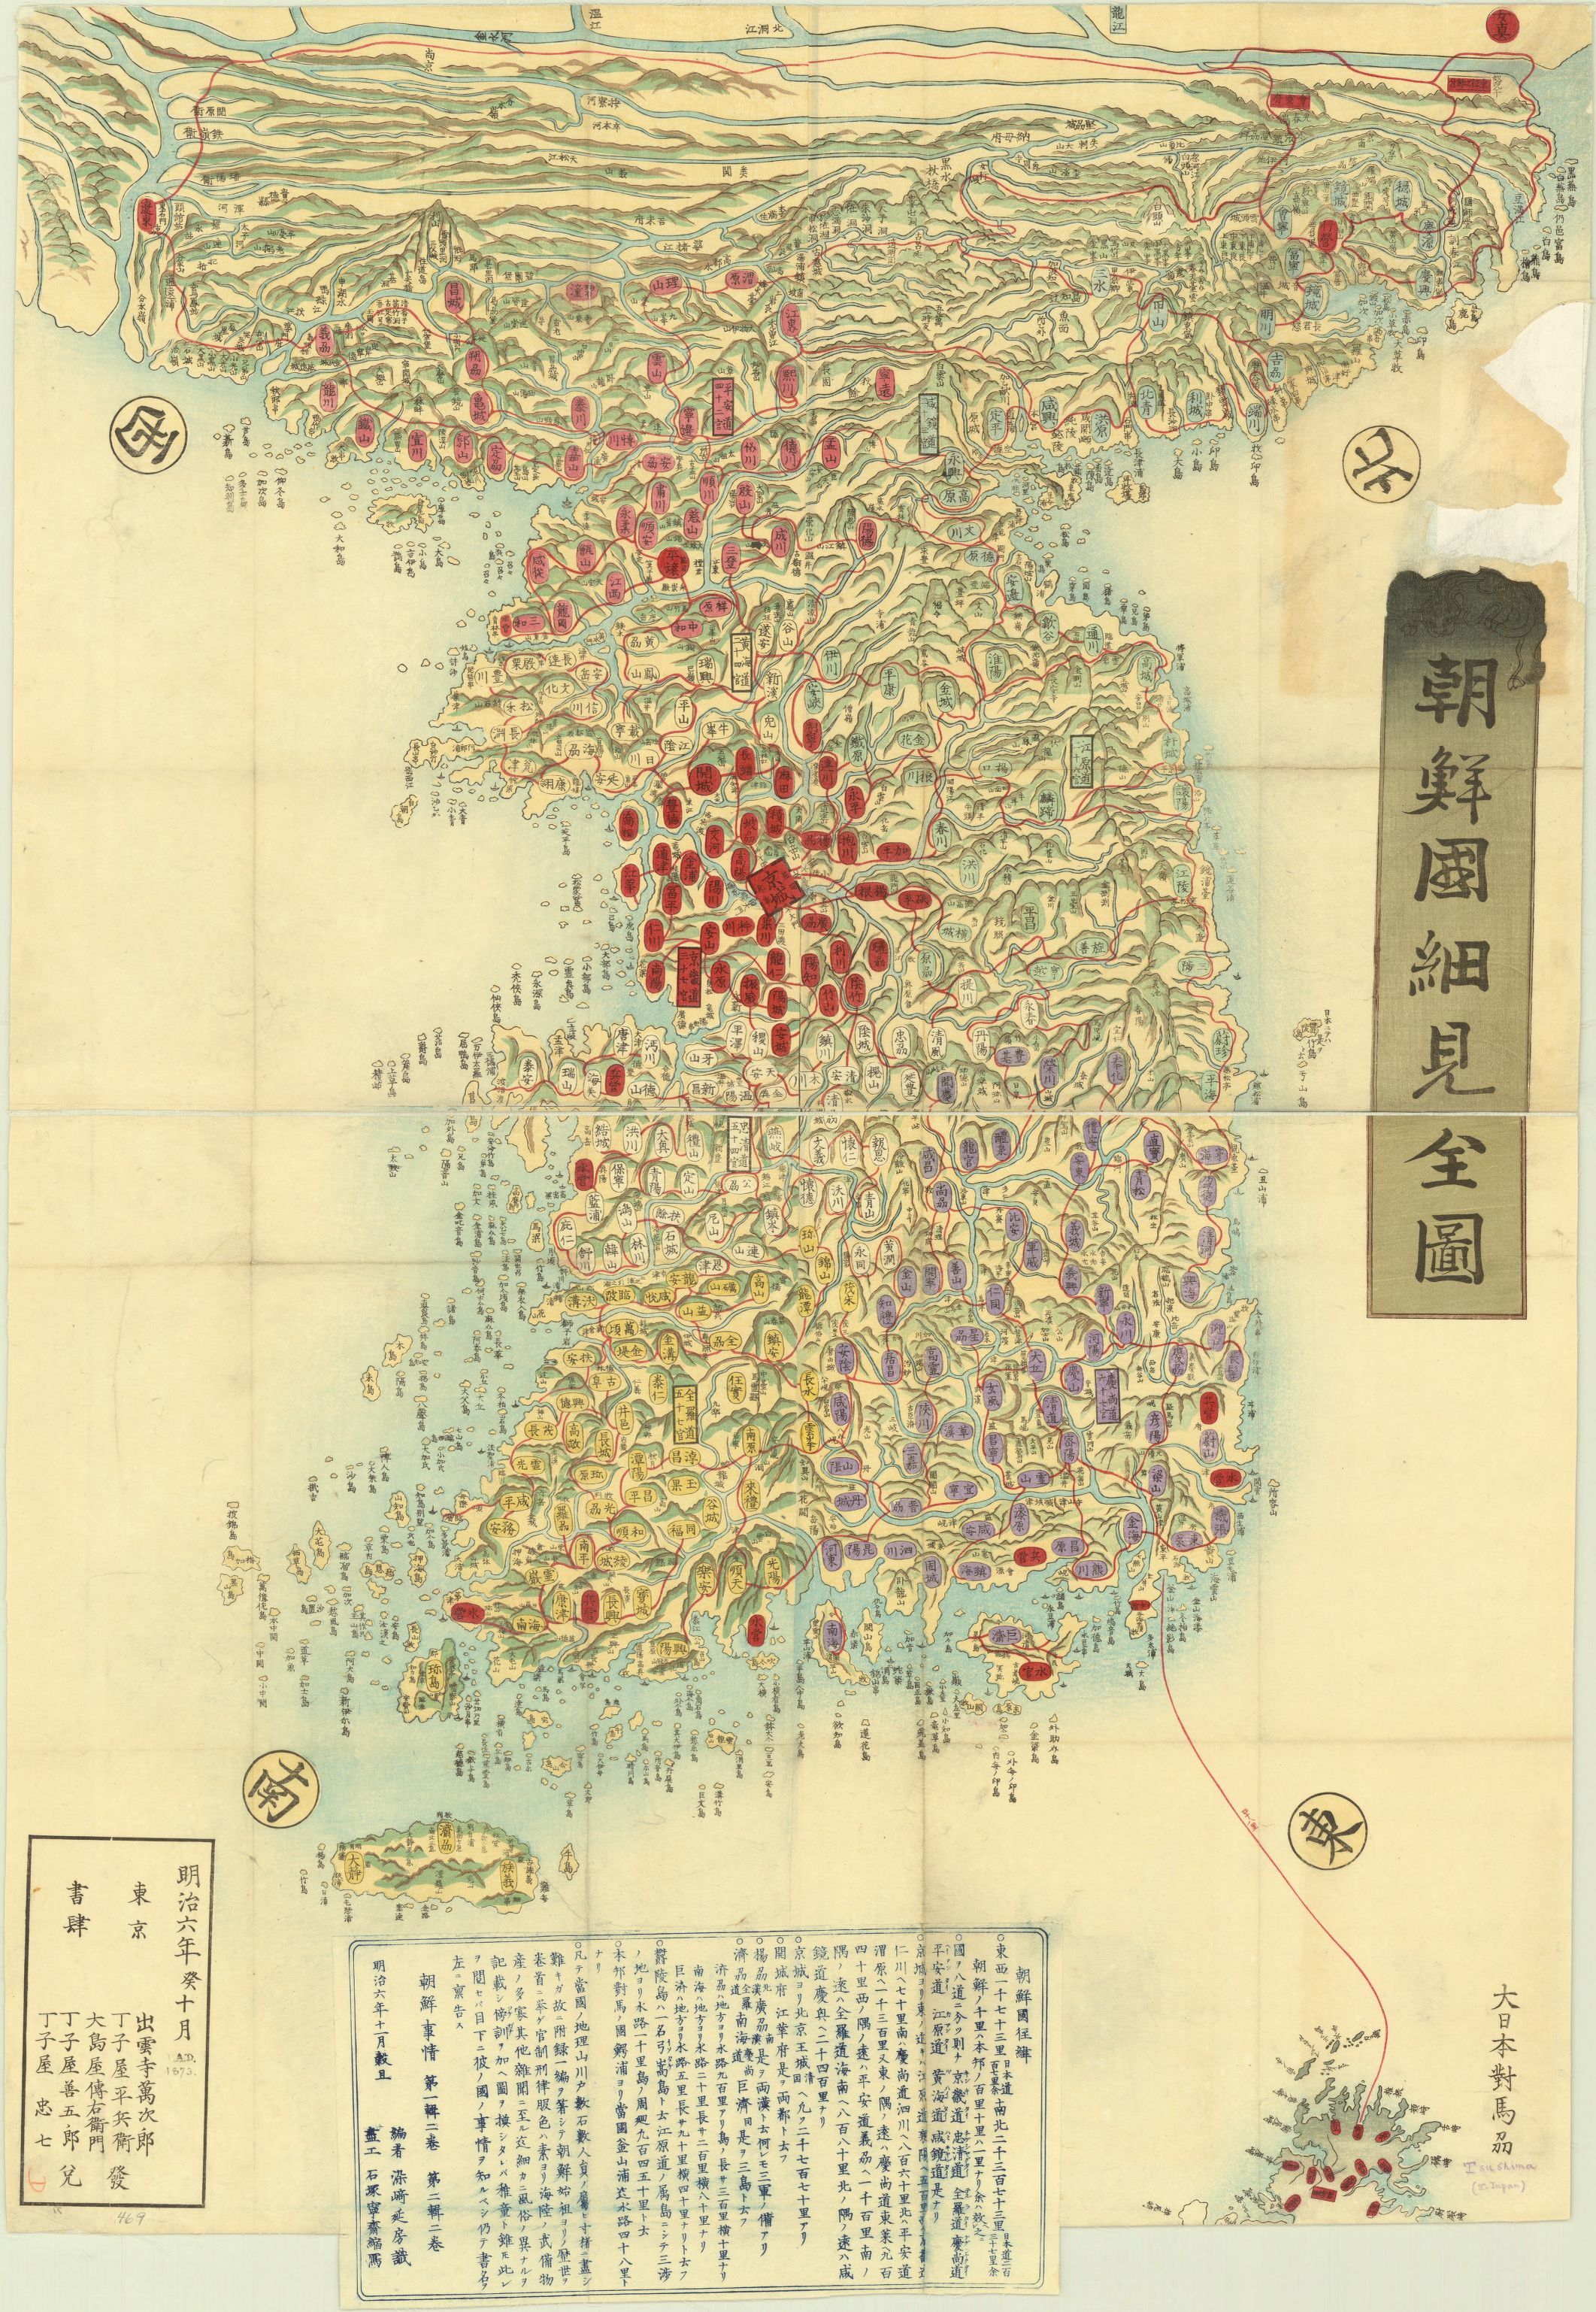 1873日本绘制朝鲜半岛地图[7]